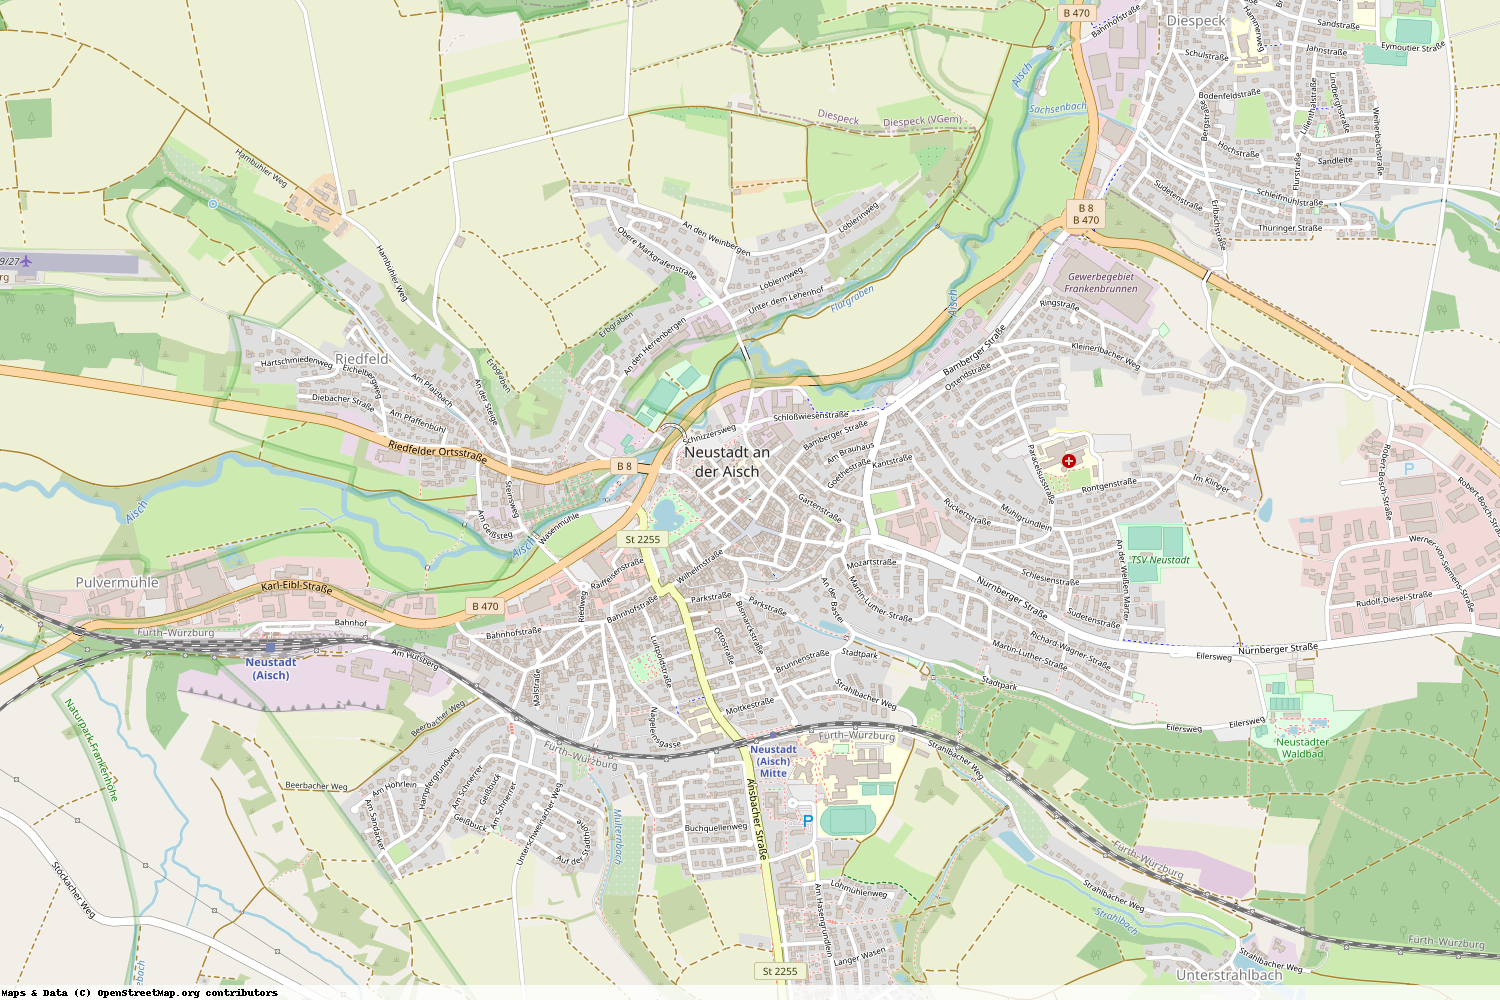 Ist gerade Stromausfall in Bayern - Neustadt a.d. Aisch-Bad Windsheim - Neustadt a.d. Aisch?